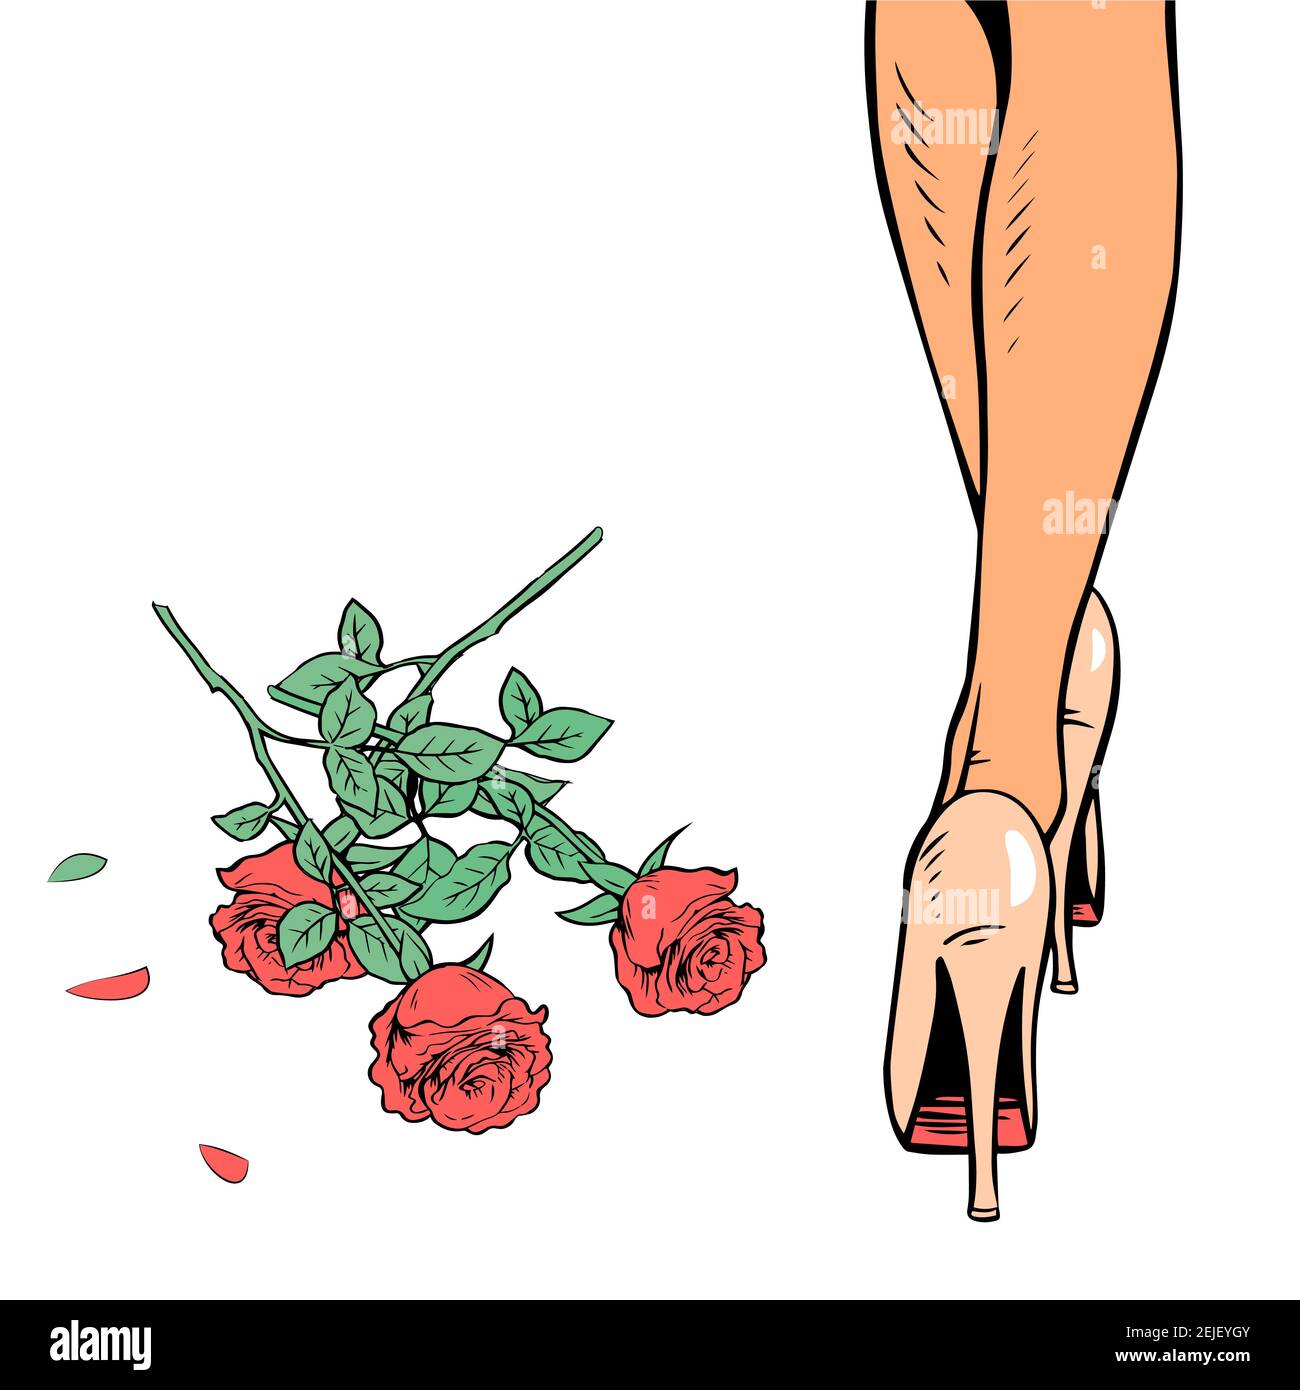 Das Mädchen warf die Blumen weg. Frauen Beine in Fersen und ein Bouquet von roten Rosen auf dem Boden. Vektor Pop Art Retro Illustration Stock Vektor